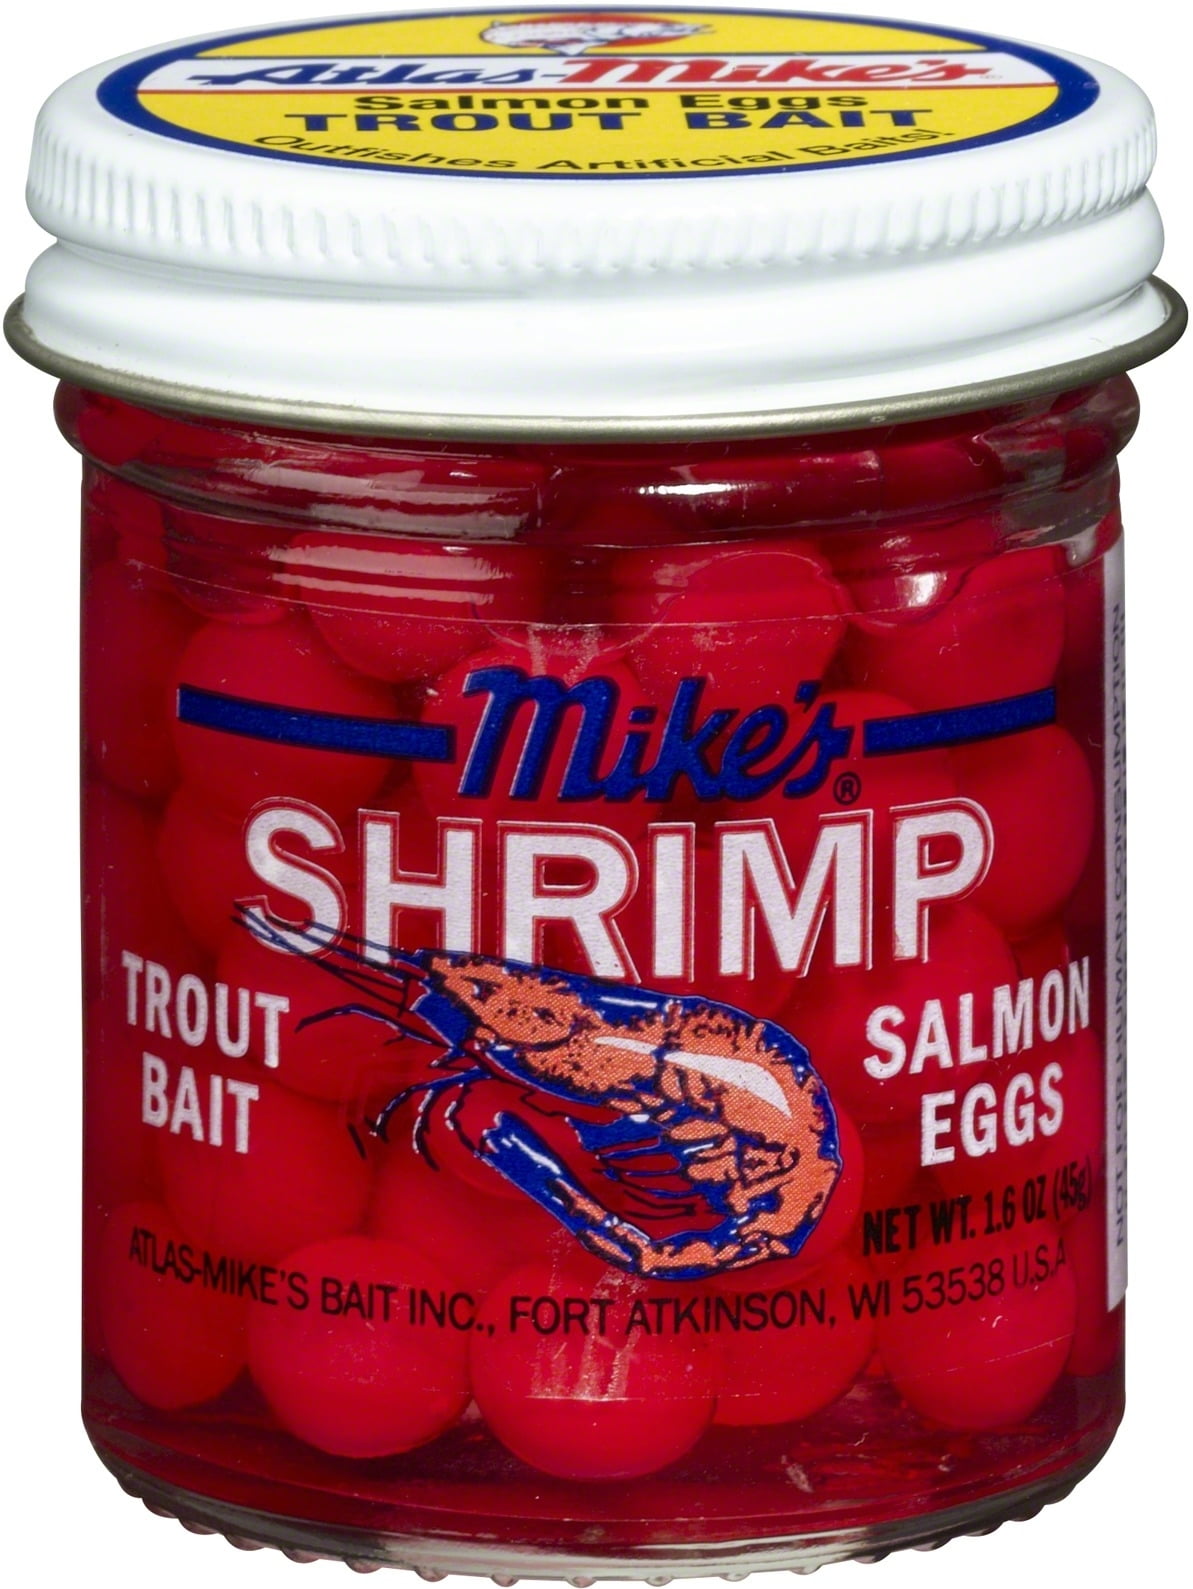 Atlas-Mike's Salmon Egg, Shrimp Oil 